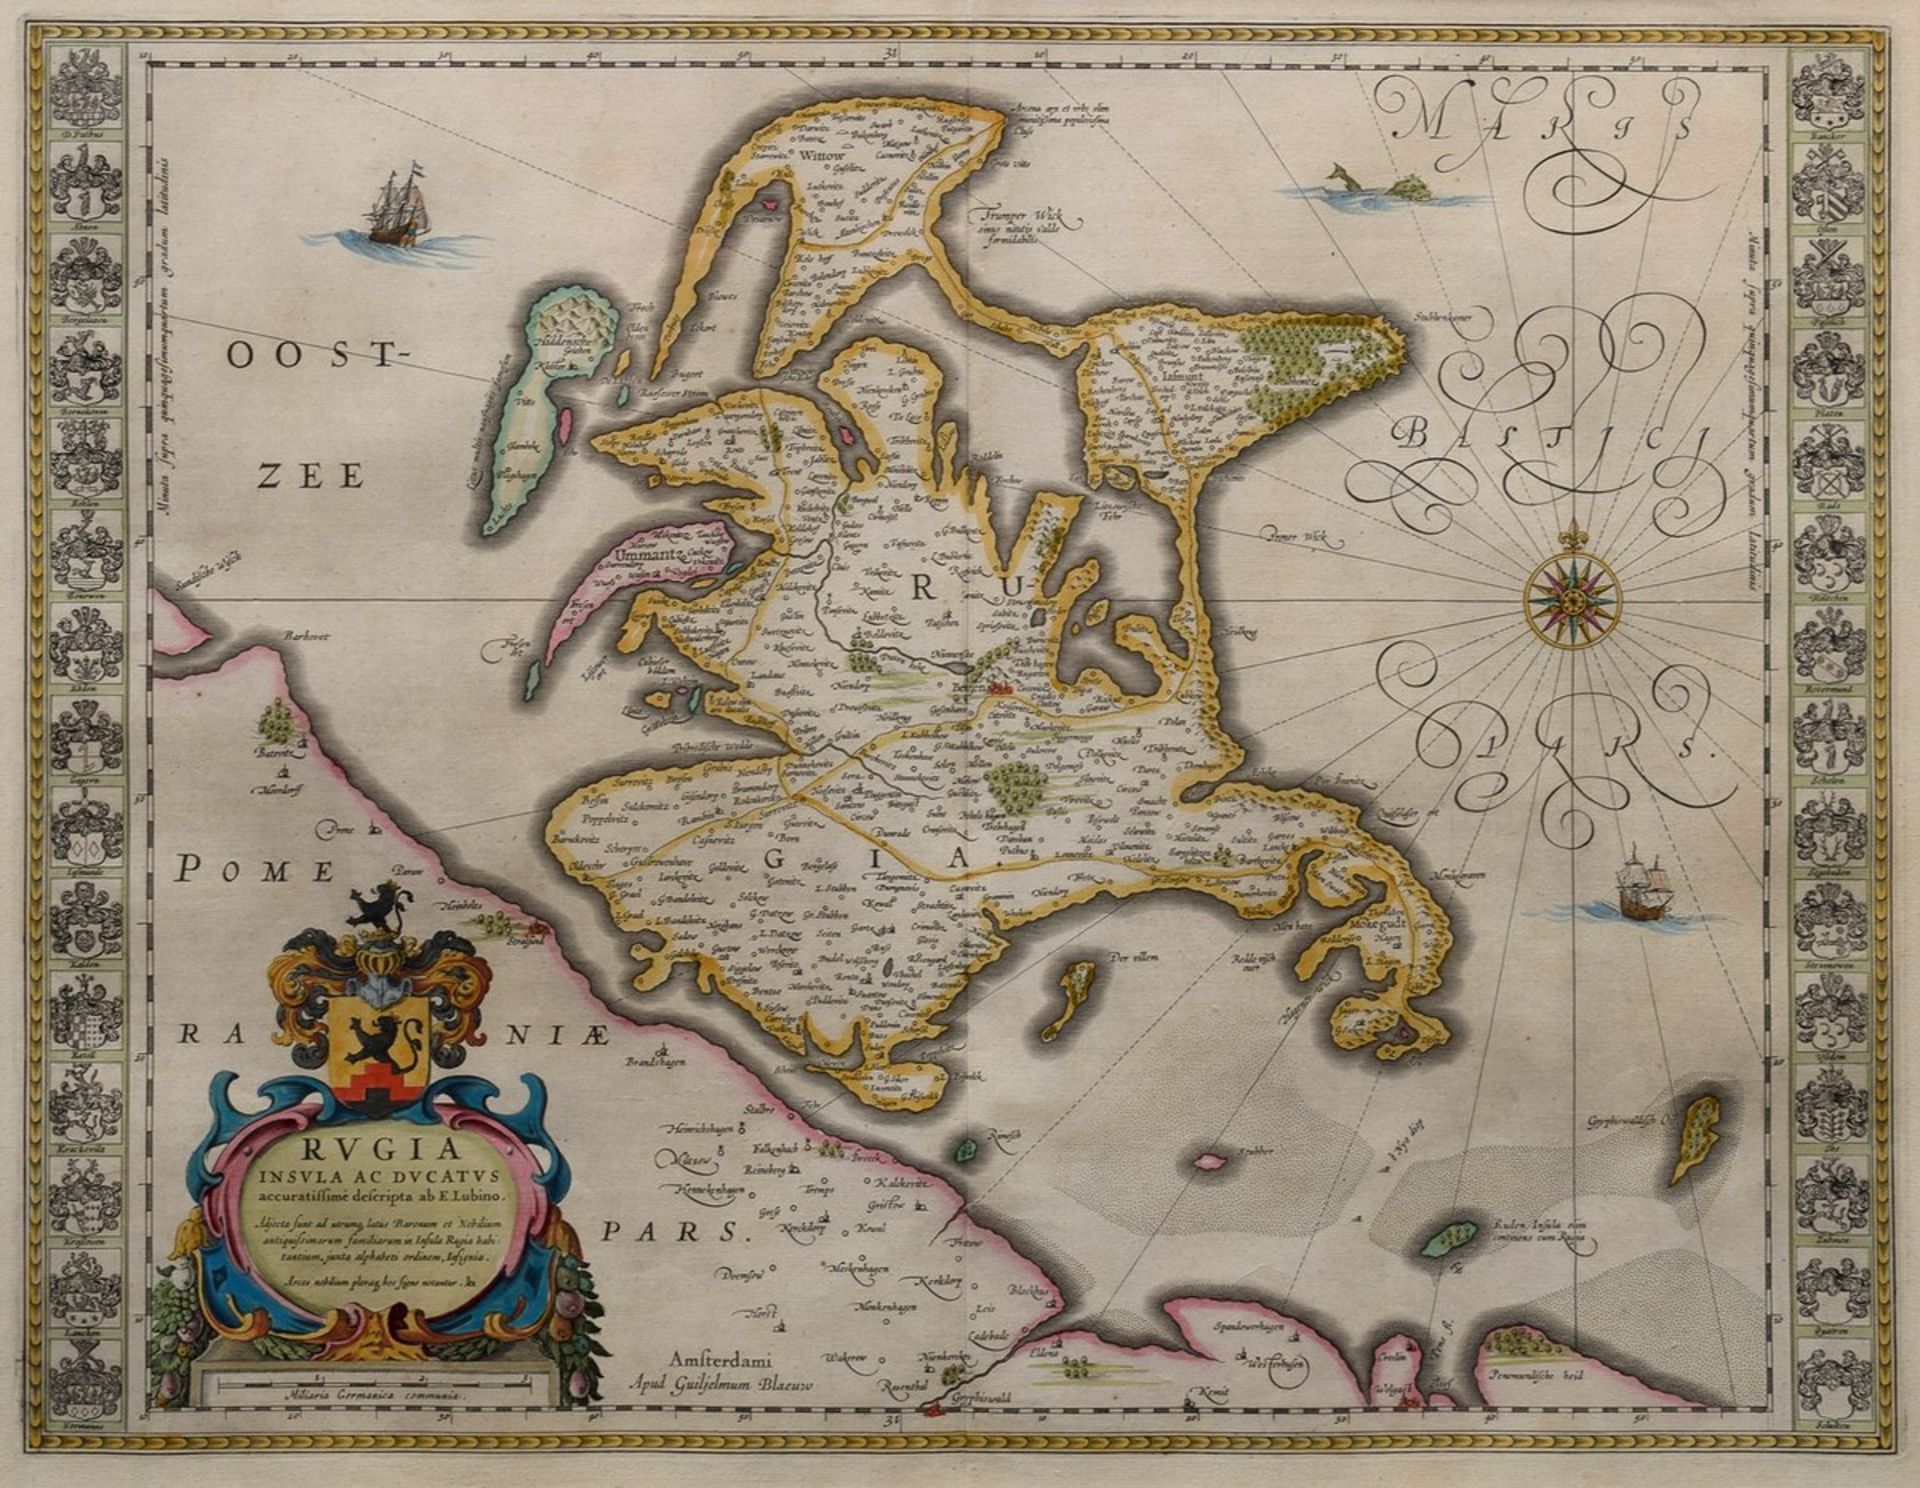 Blaeu, Willem (1571-1638) "Rugia Insula ac Ducatus accurassimime descripta" (Karte der Insel